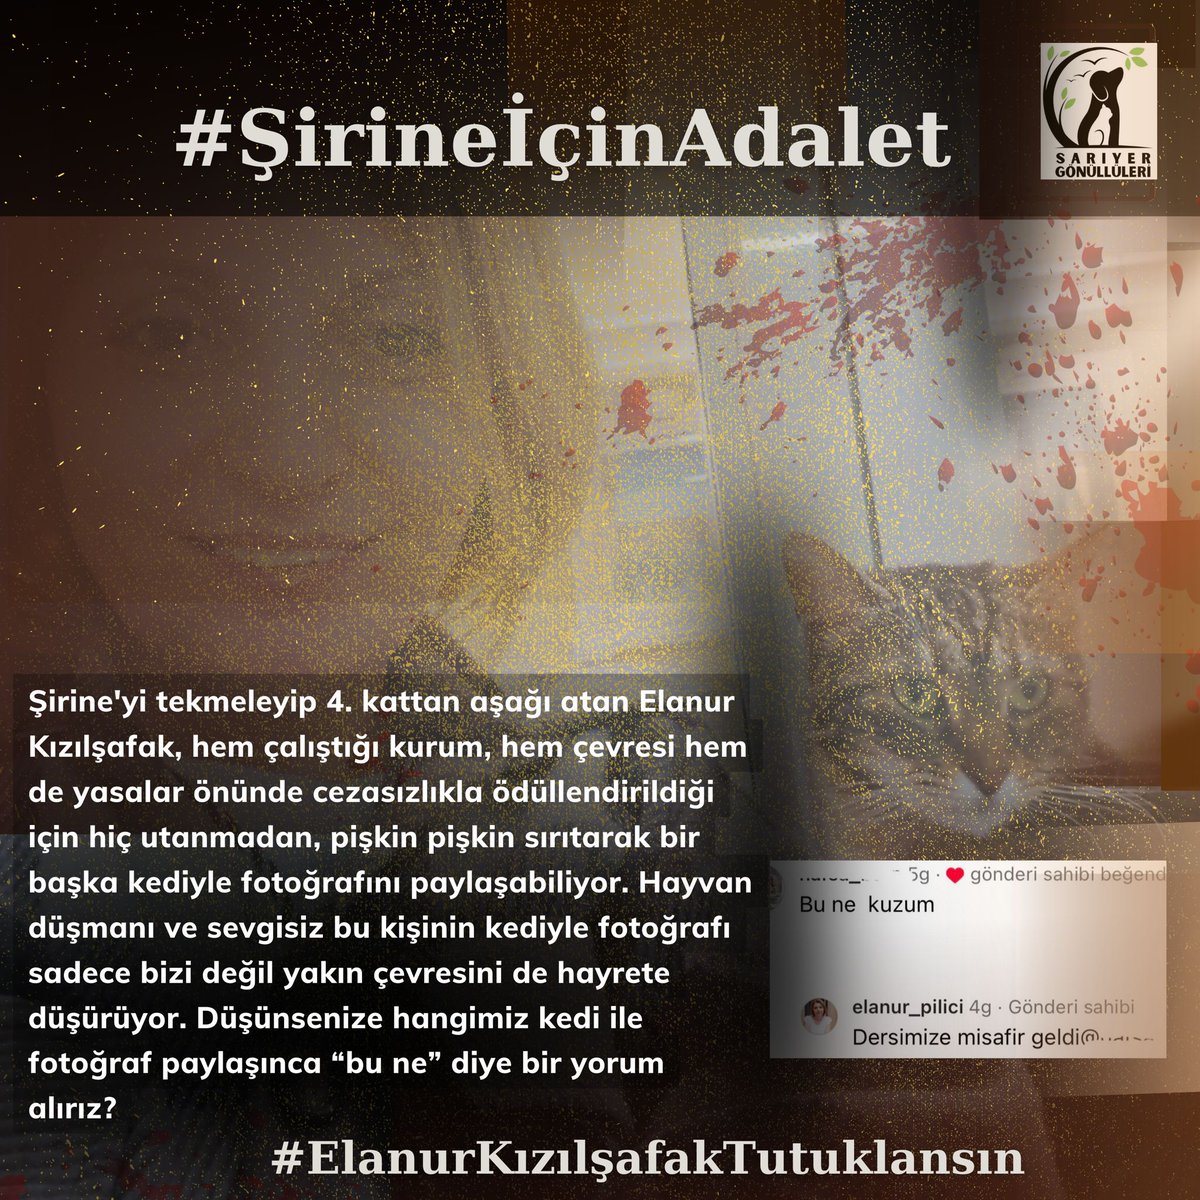 #ElanurKızılşafakTutuklansın Adalet istiyoruz. Caydırıcı ceza istiyoruz. #şirineiçinadalet